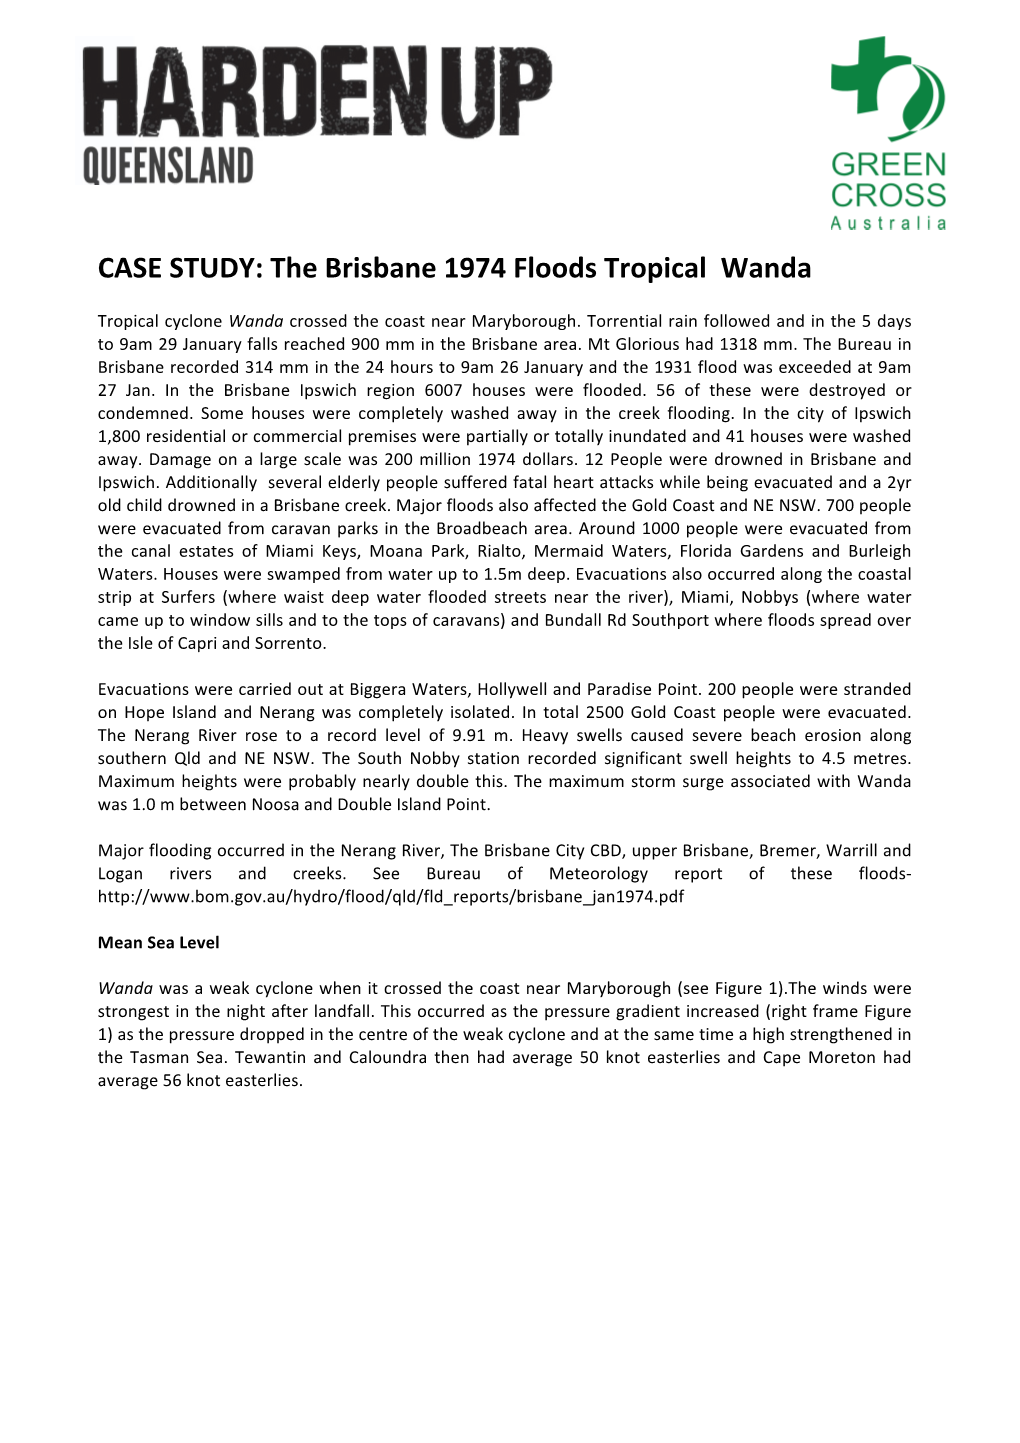 The Brisbane 1974 Floods Tropical Wanda